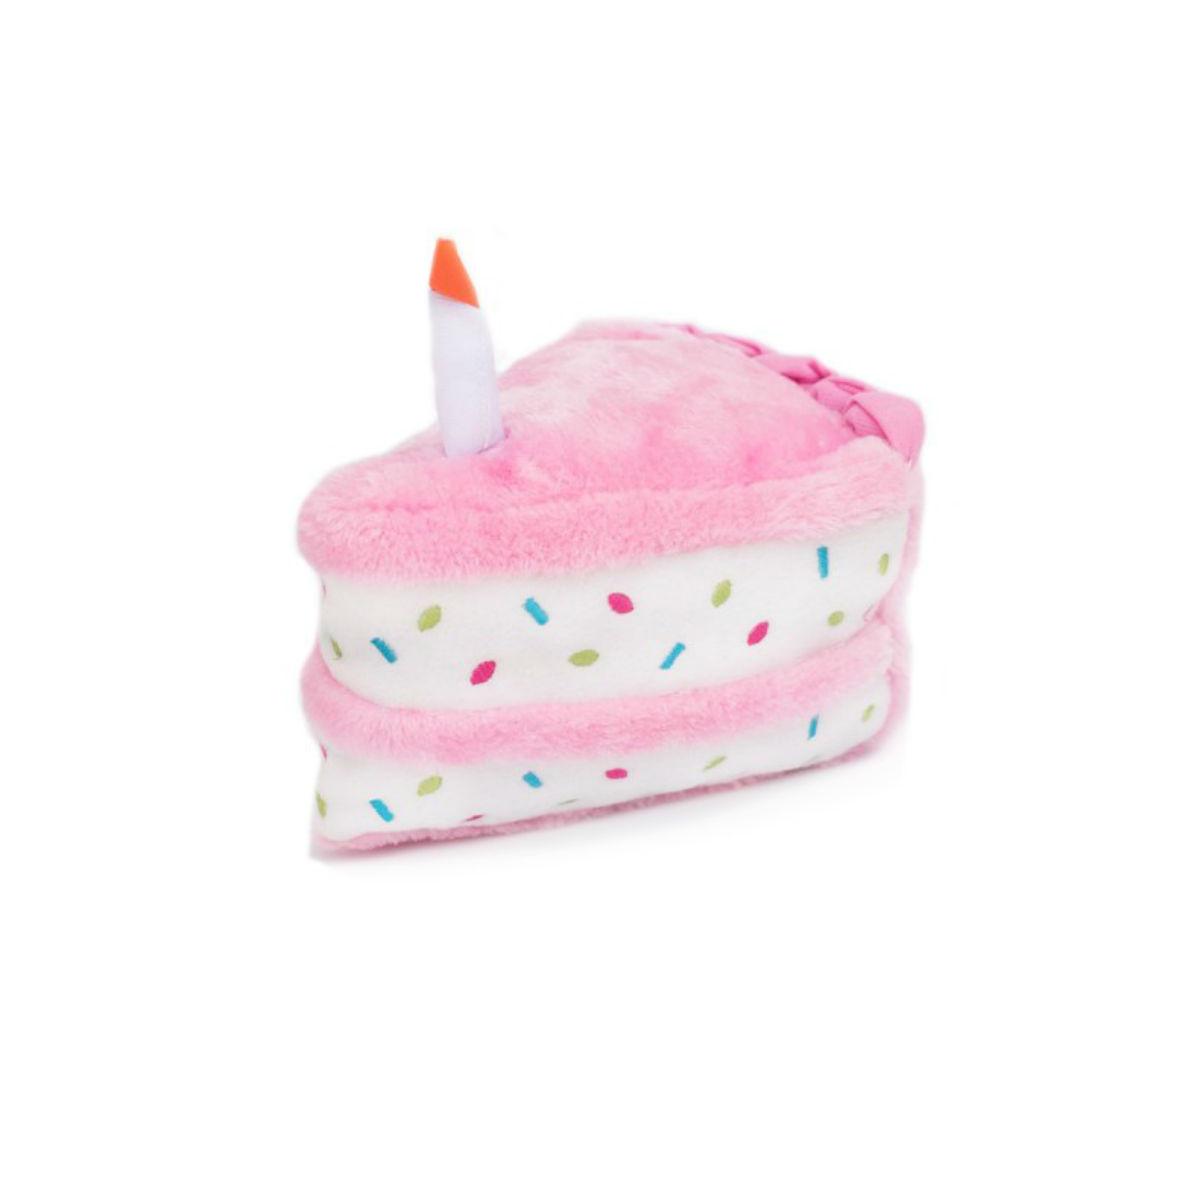 birthday cake plush dog toy